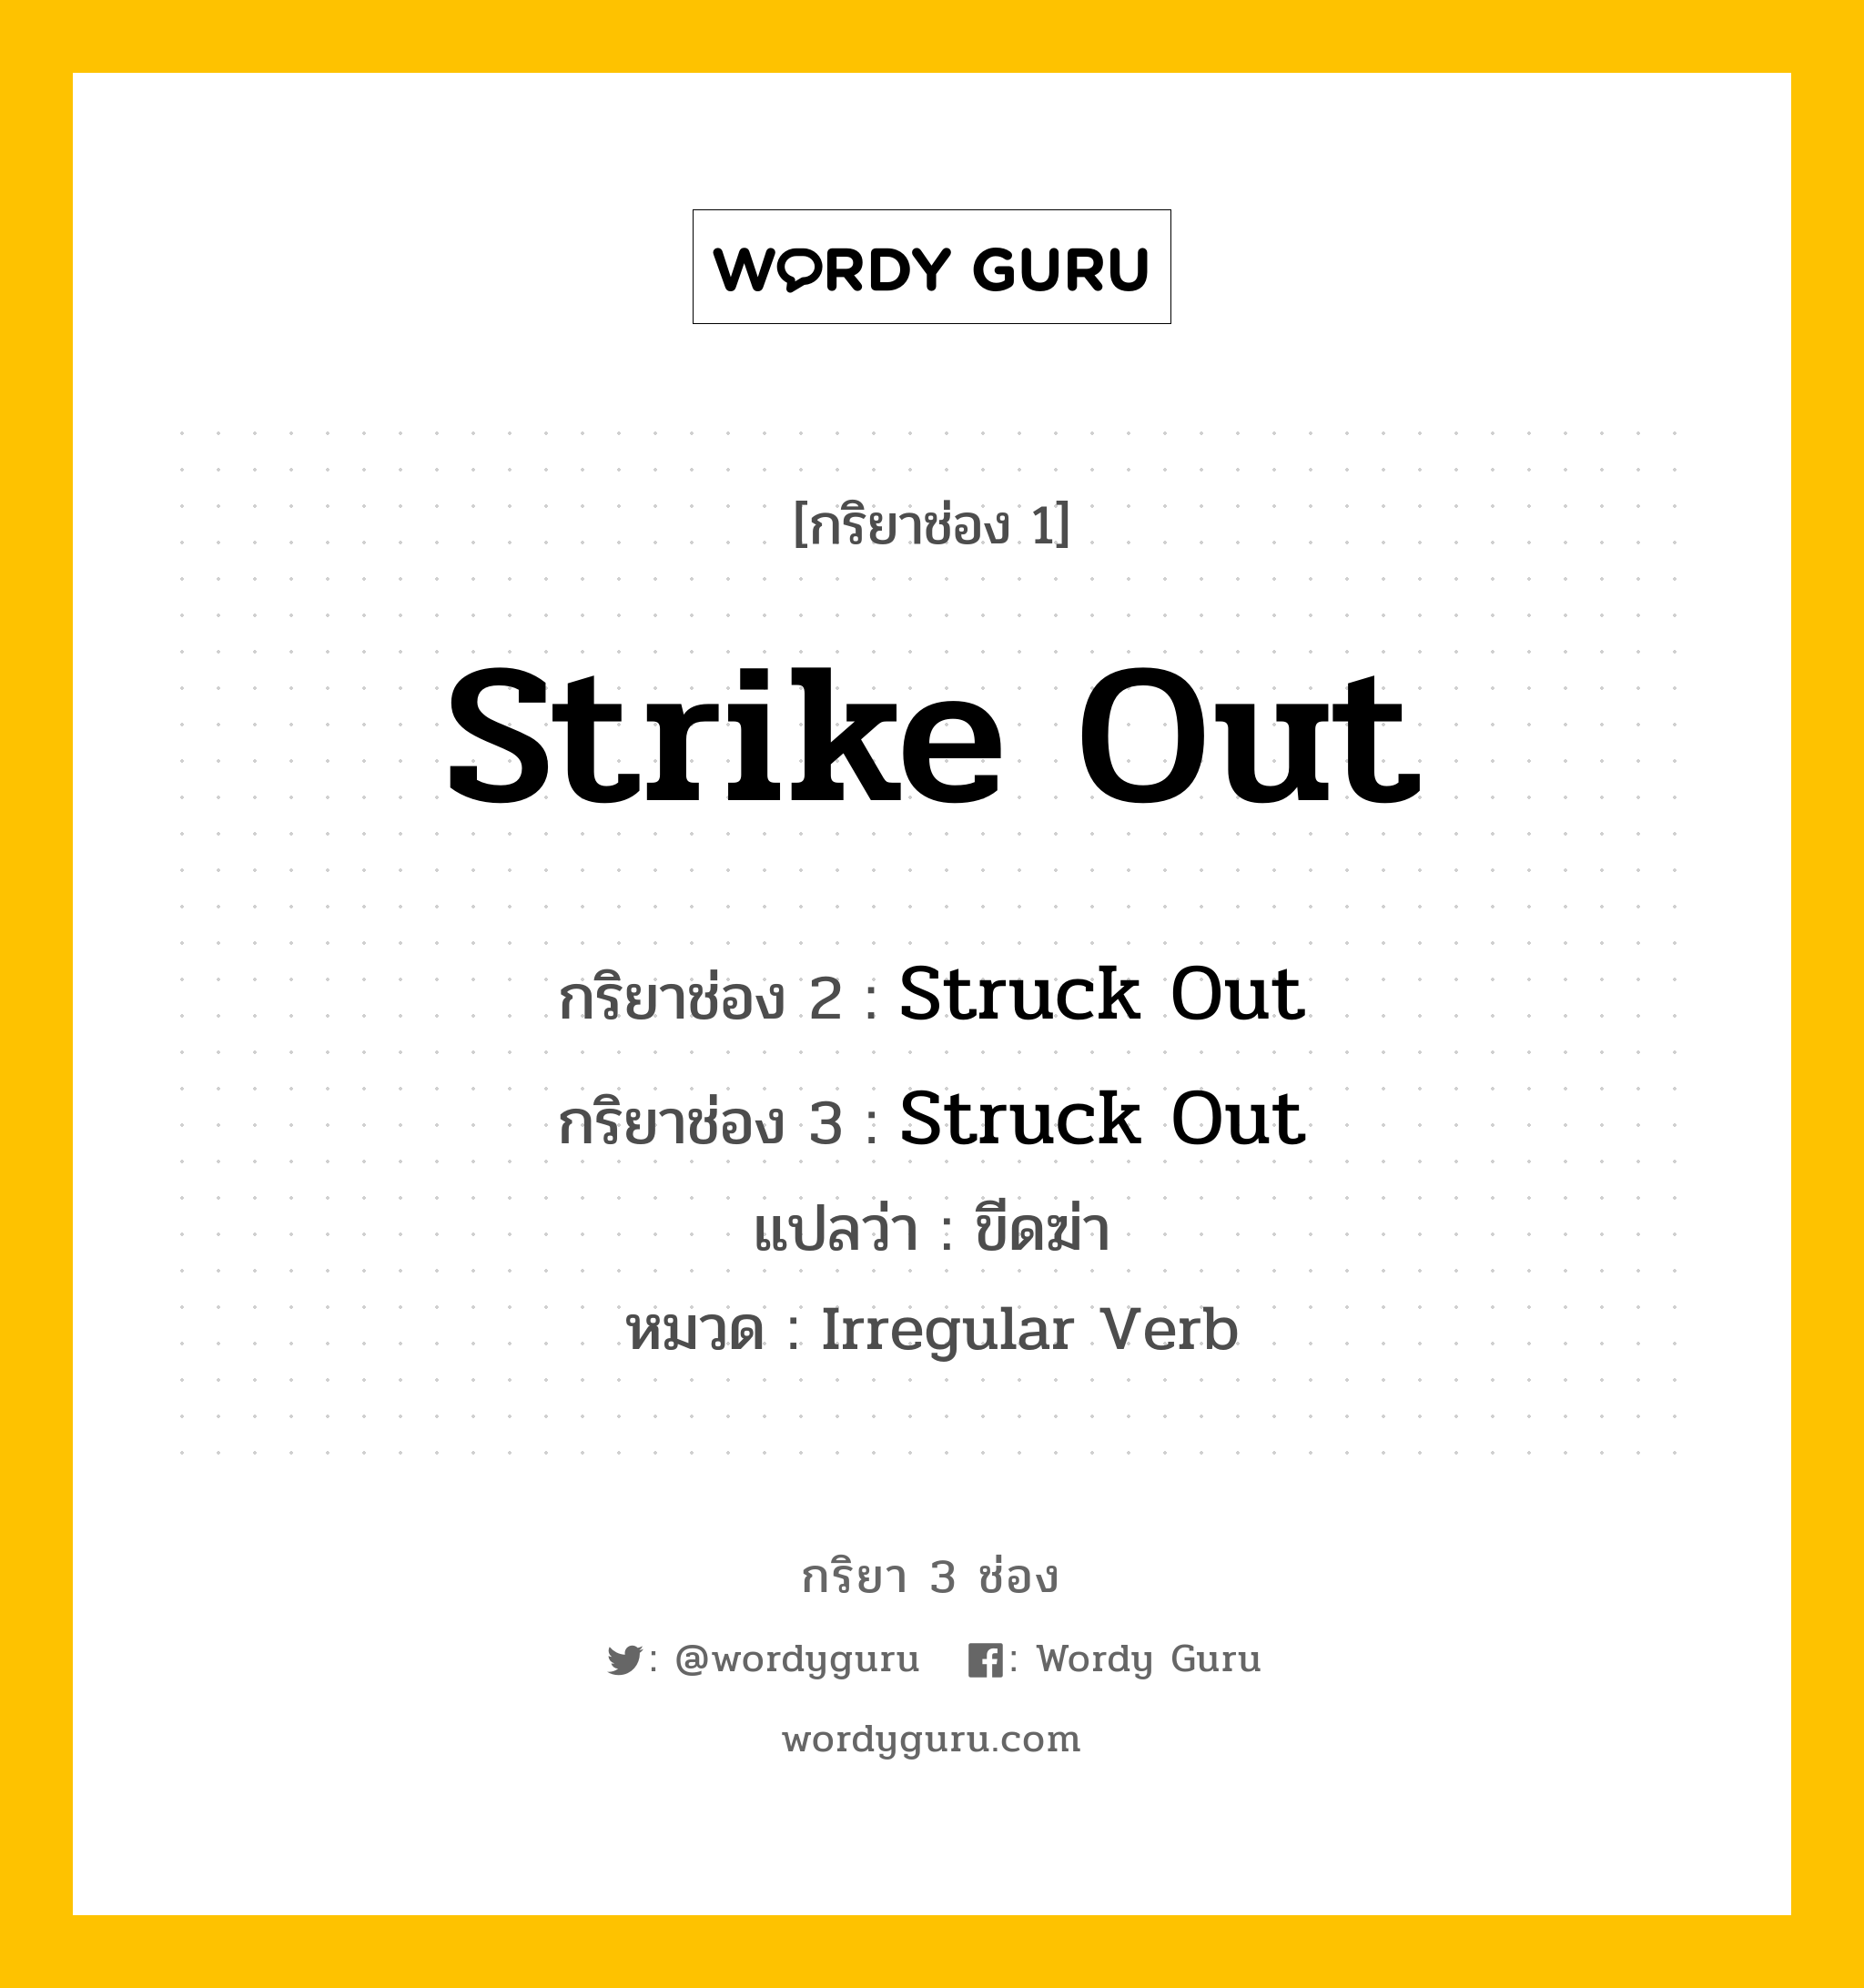 กริยา 3 ช่อง: Strike Out ช่อง 2 Strike Out ช่อง 3 คืออะไร, กริยาช่อง 1 Strike Out กริยาช่อง 2 Struck Out กริยาช่อง 3 Struck Out แปลว่า ขีดฆ่า หมวด Irregular Verb หมวด Irregular Verb